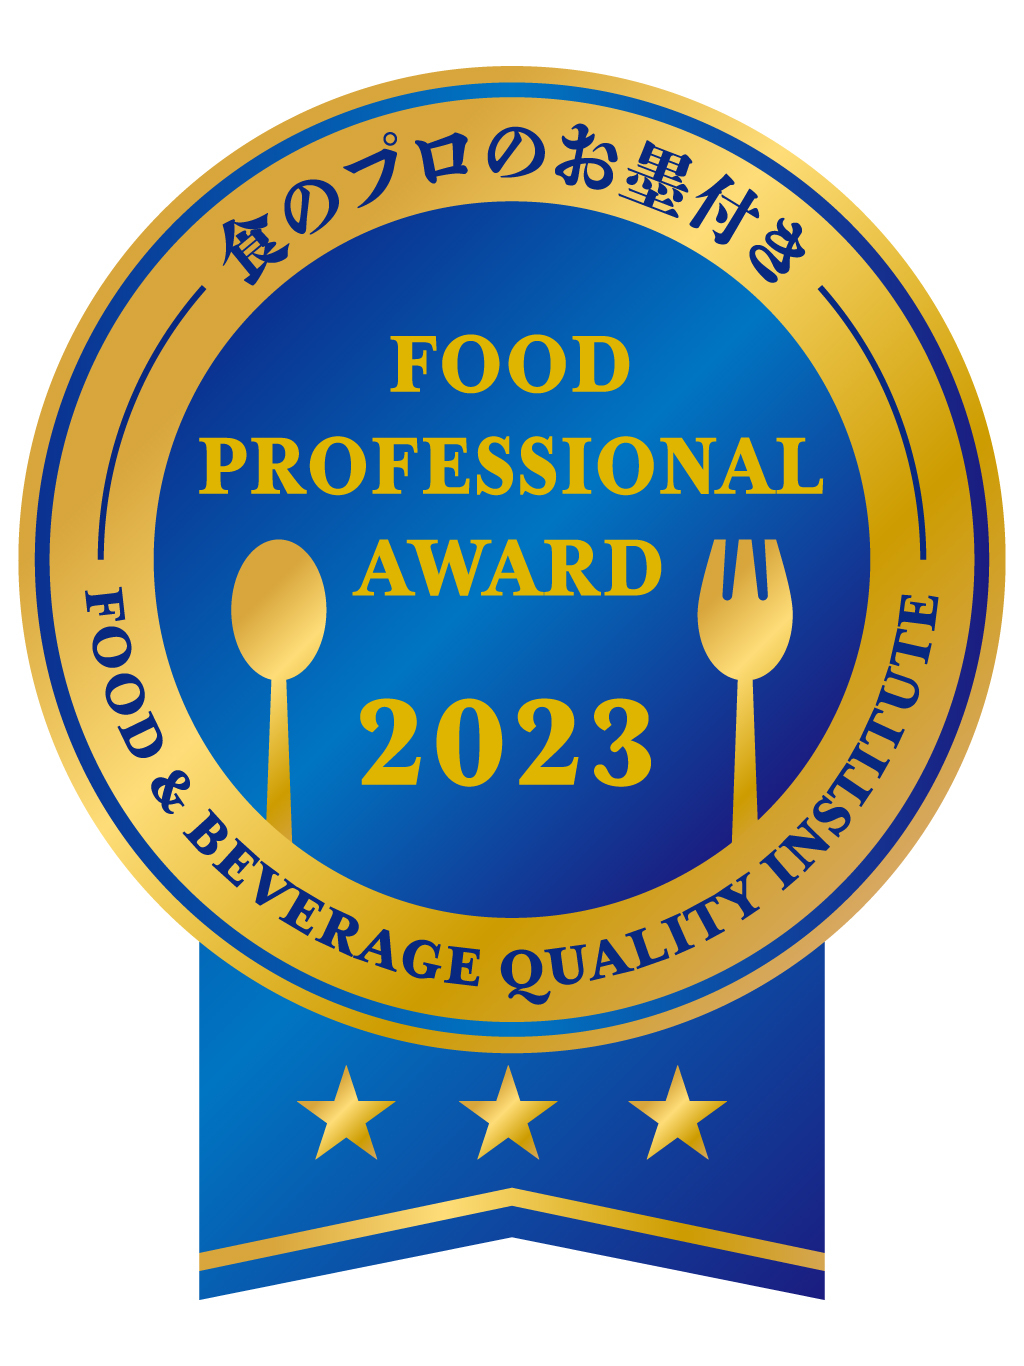 食のプロによる食の品評会「FOOD PROFESSIONAL AWARD」　
2023年度前半のエントリーを2月15日まで受付